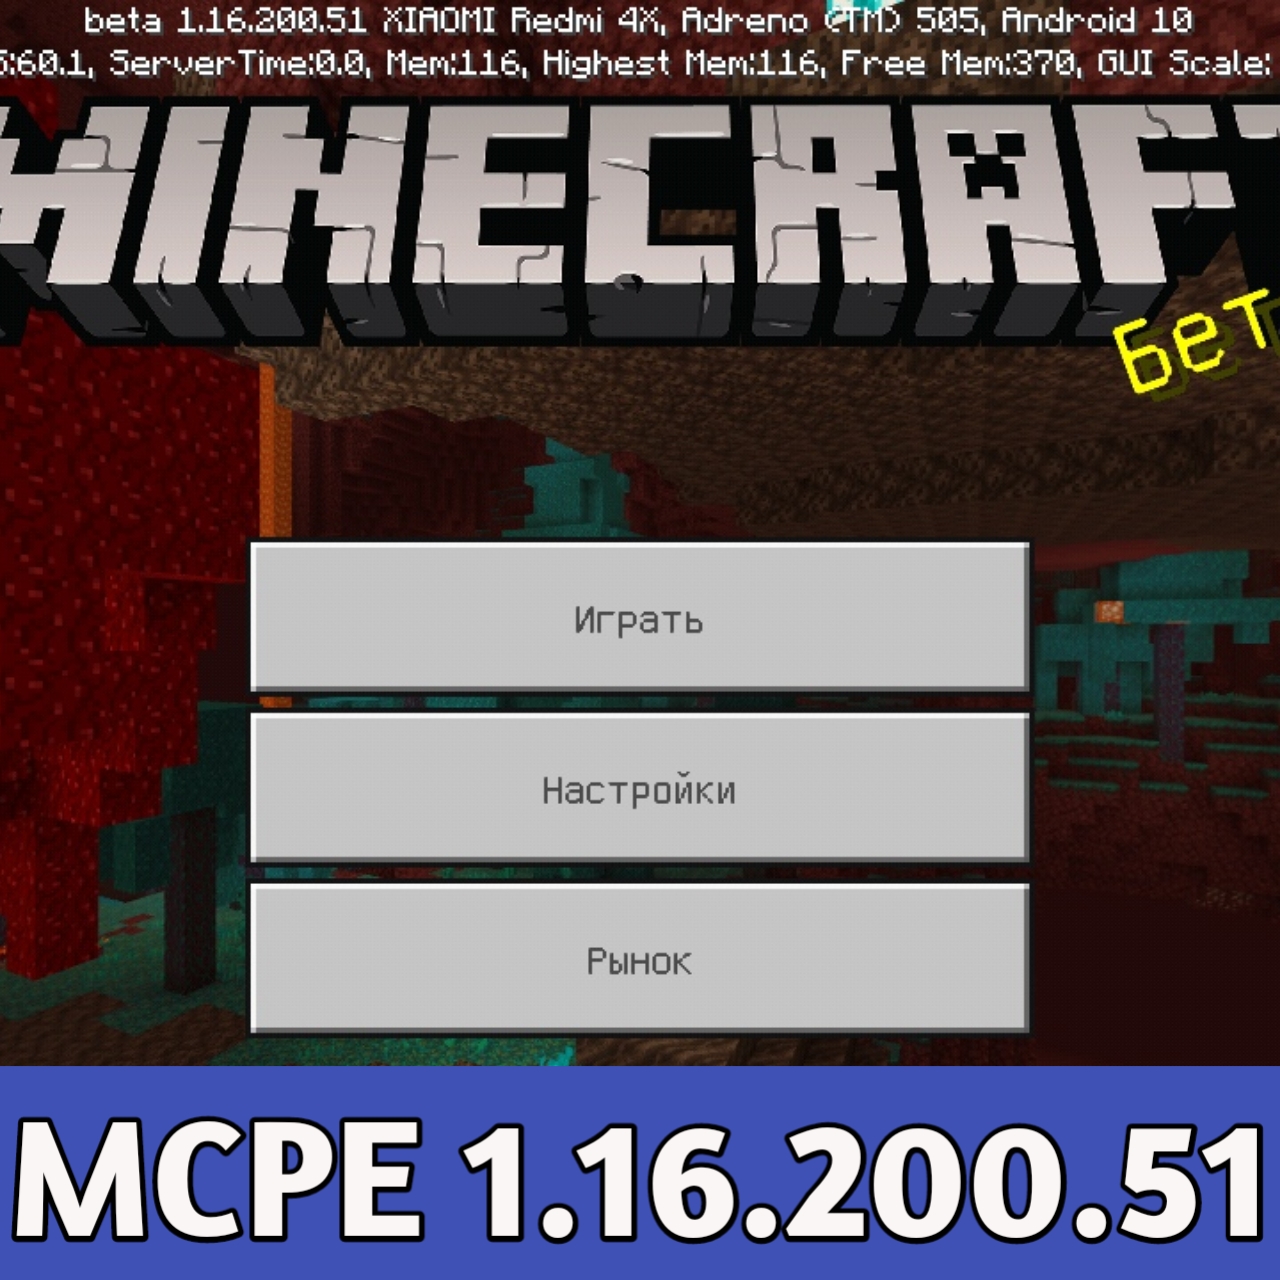 minecraft pe 1.18 apk download mediafıre